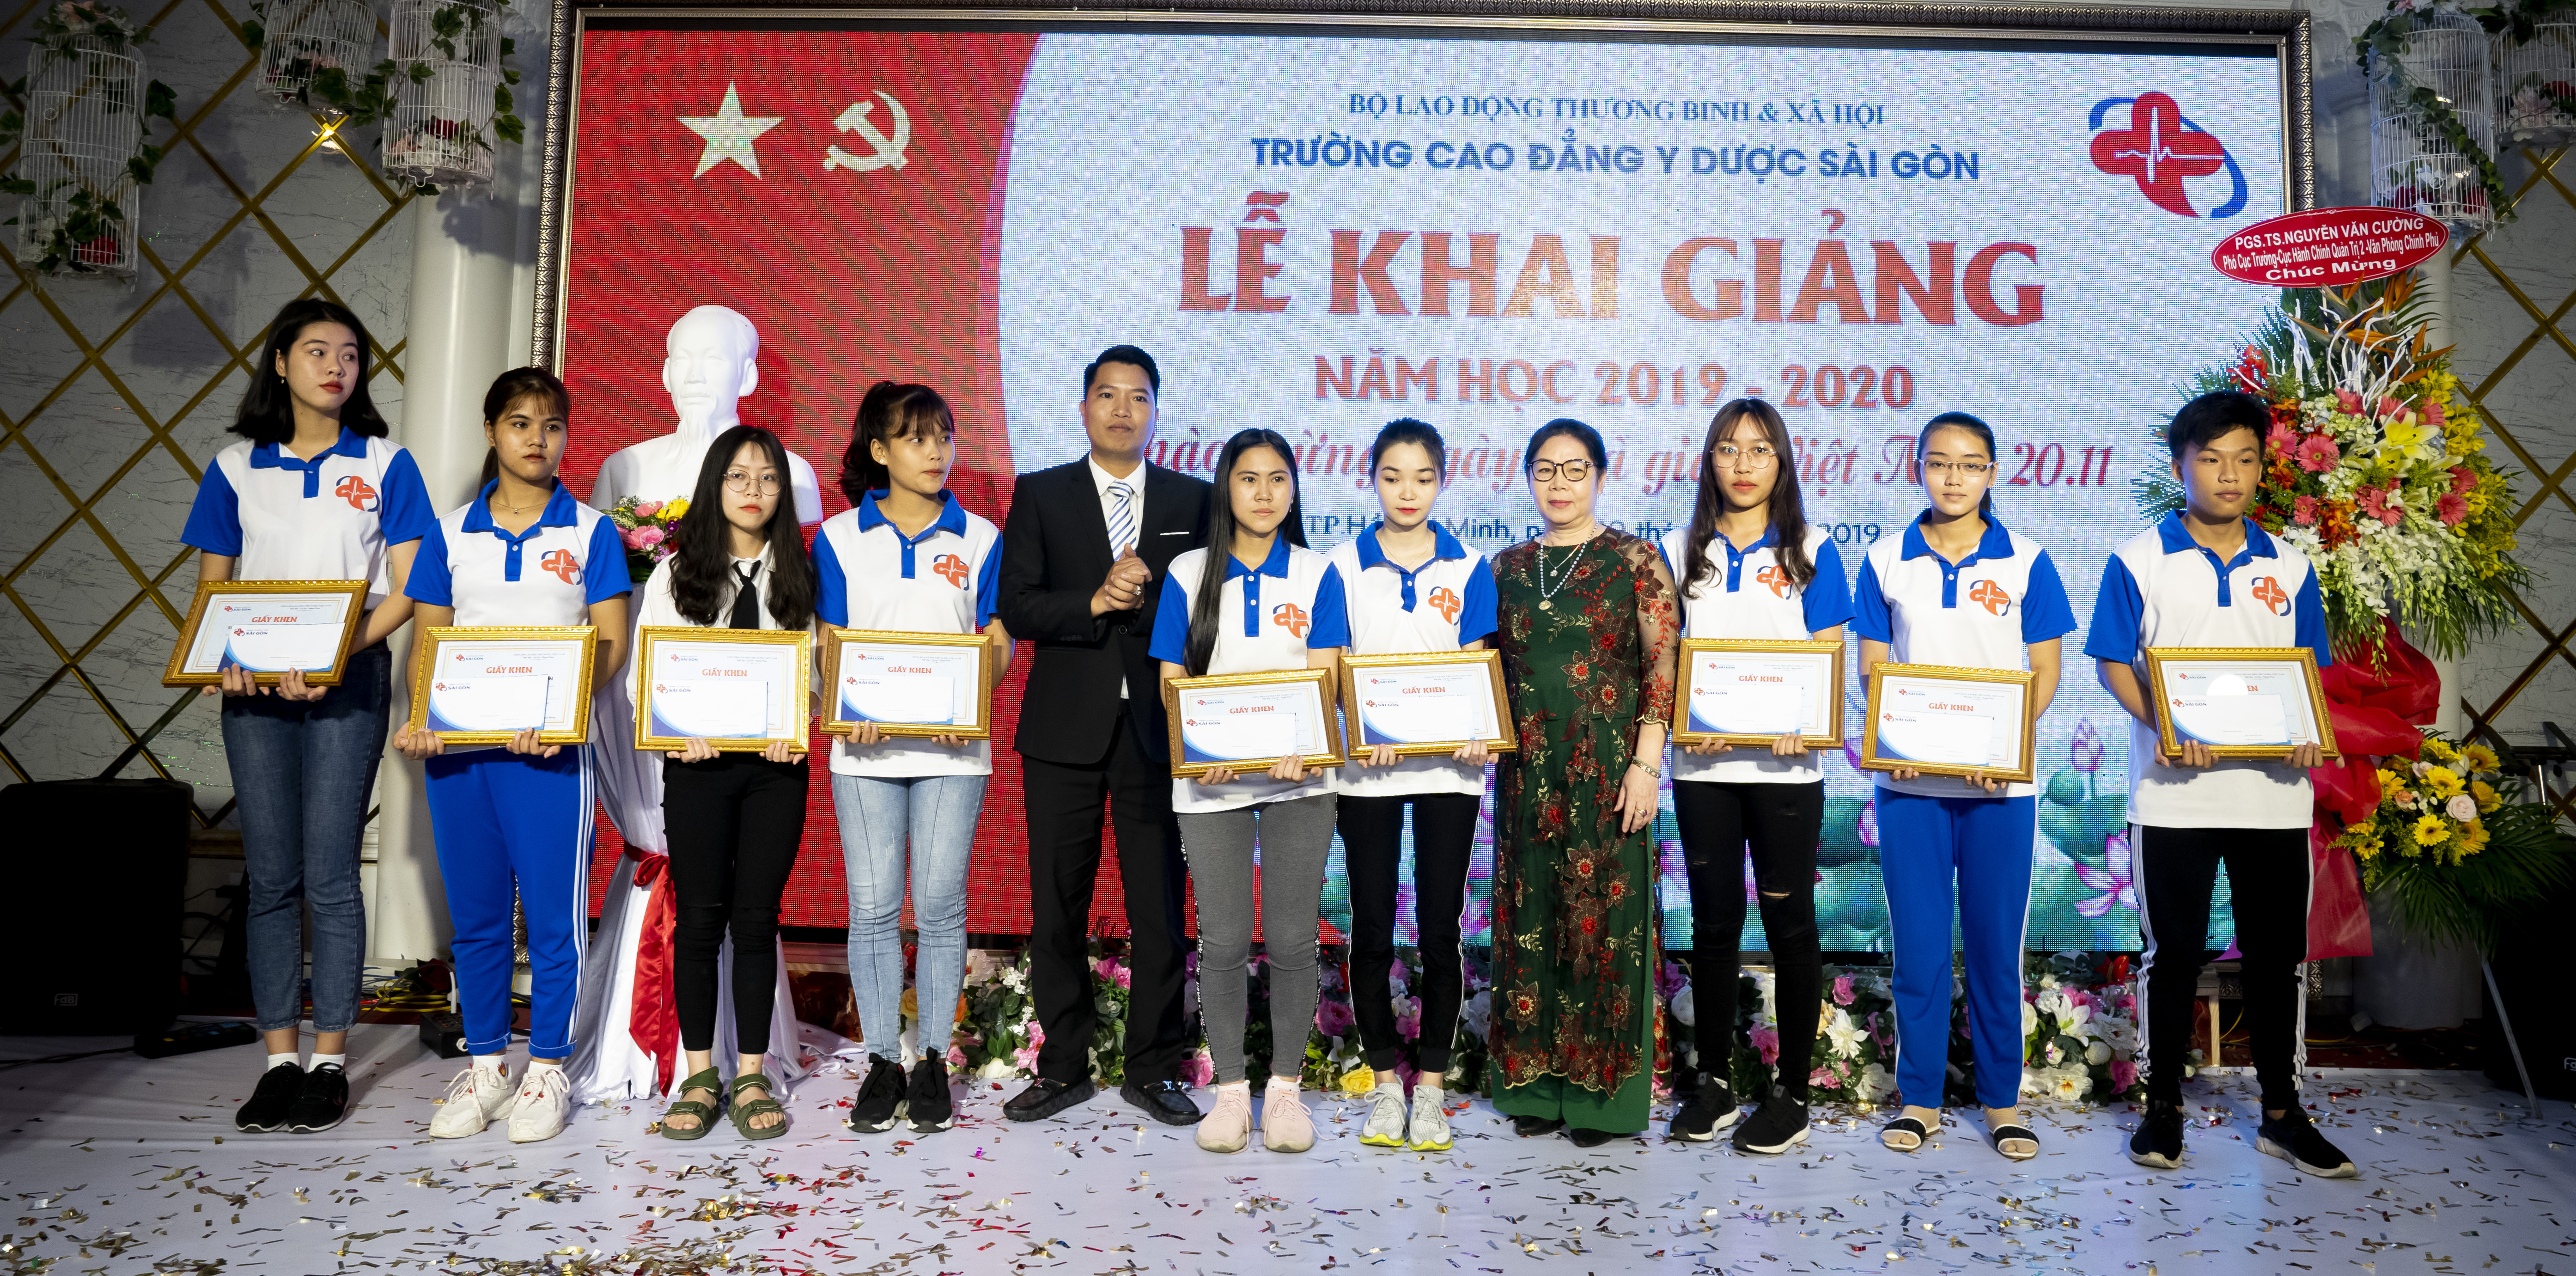 hạc sĩ Nguyễn Thị Liên và Thầy giáo Nguyễn Văn Phương trao thưởng cho các em tân sinh viên